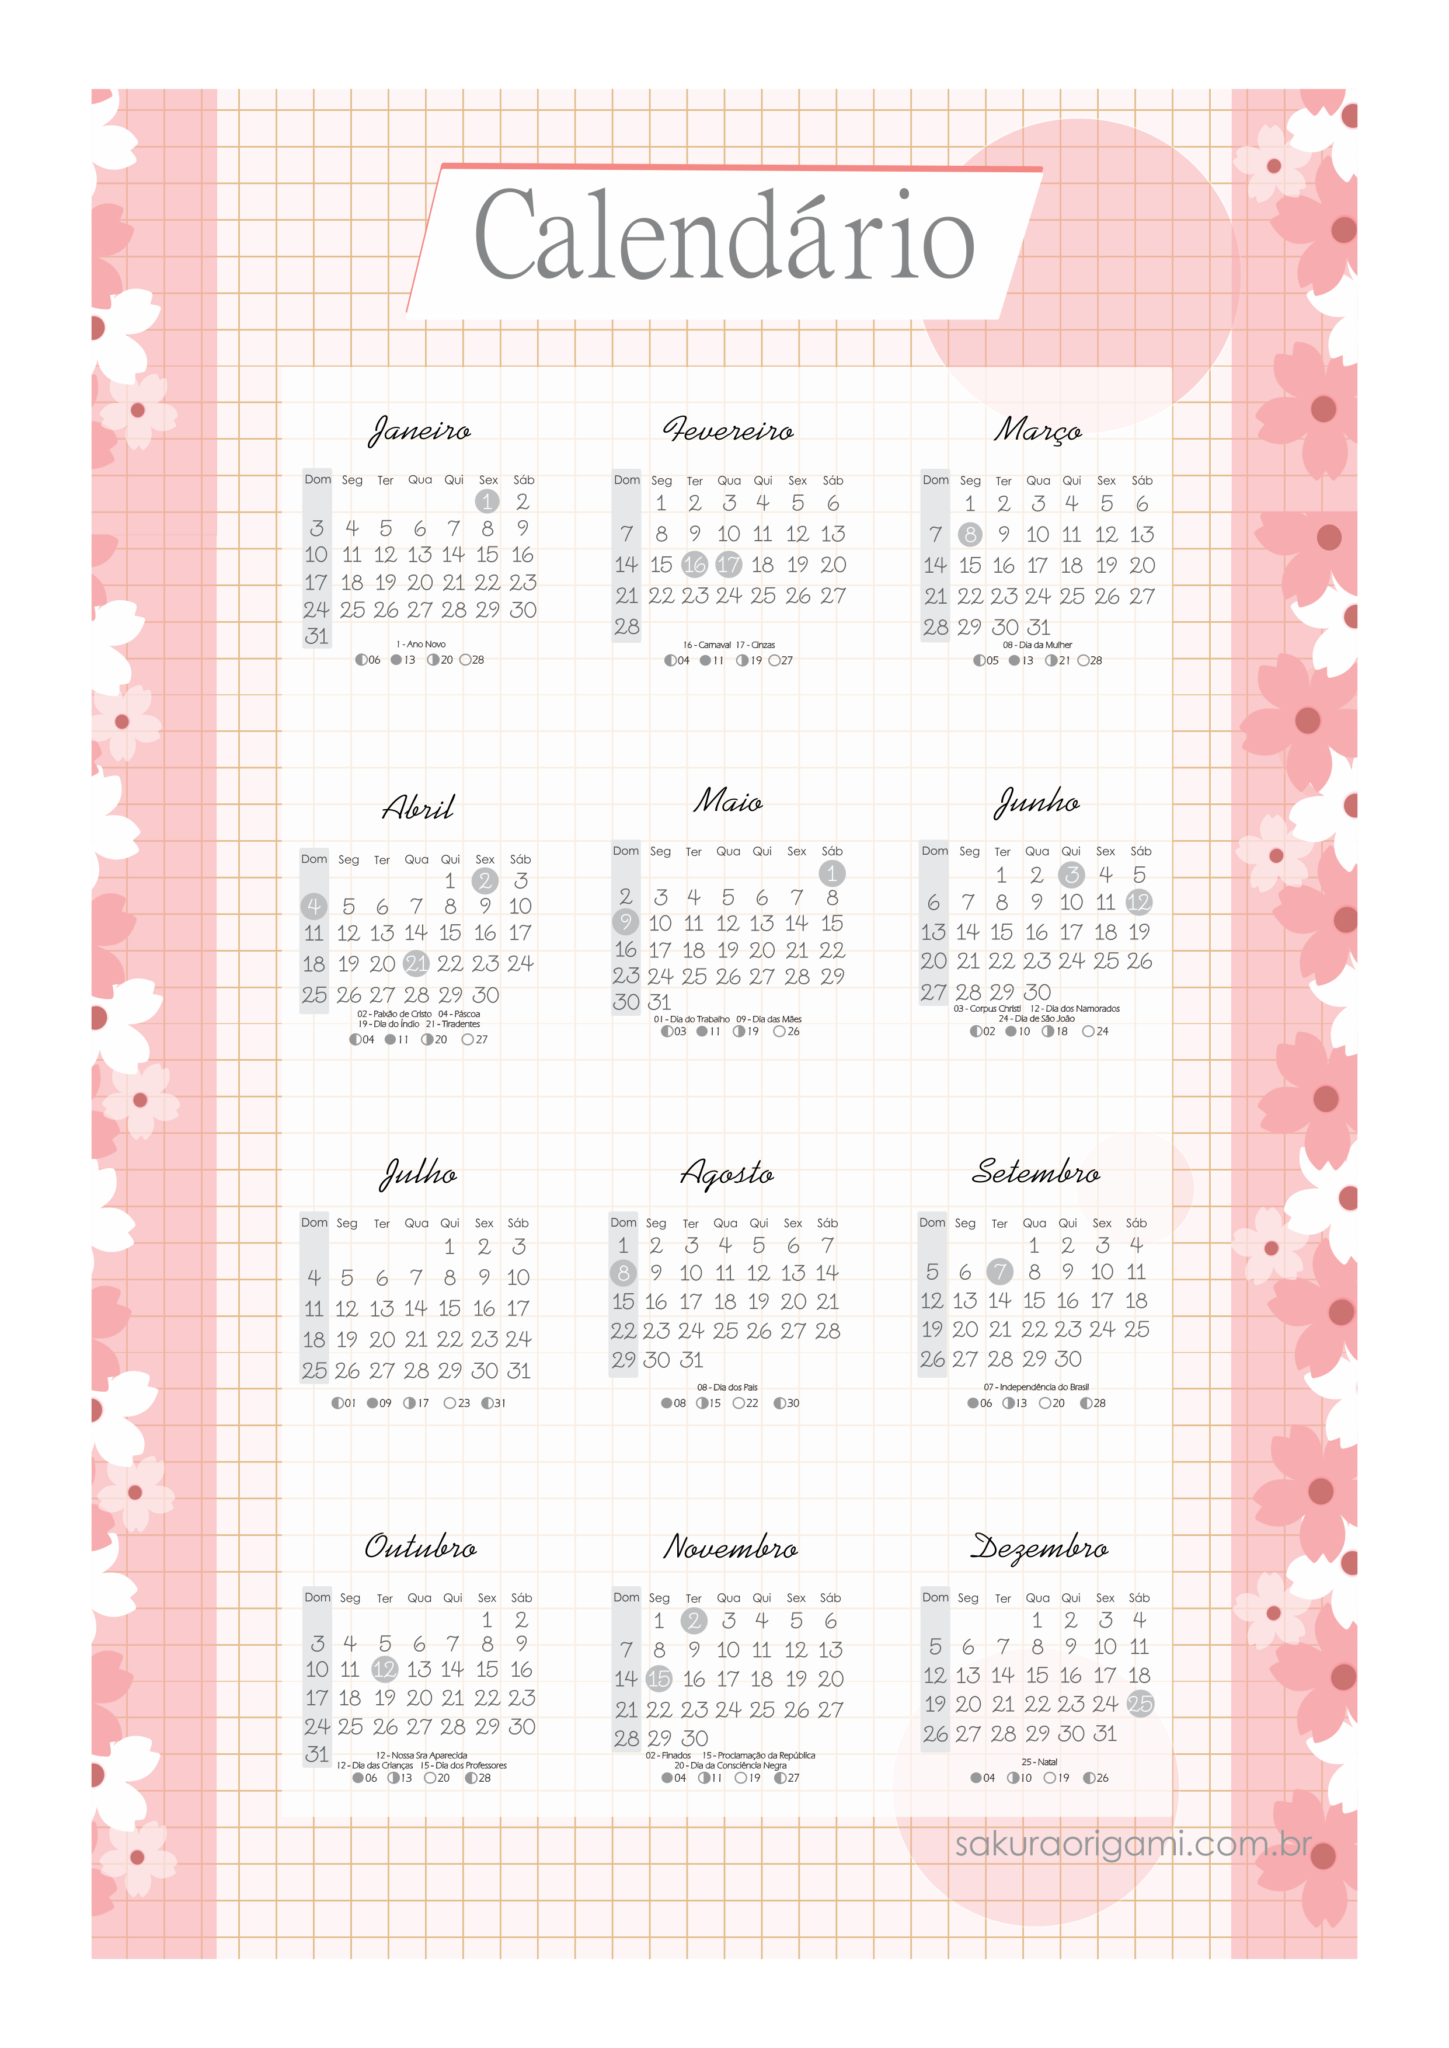 Calendário 2021 oriental 01 - baixar e imprimir - sakura origami atelie